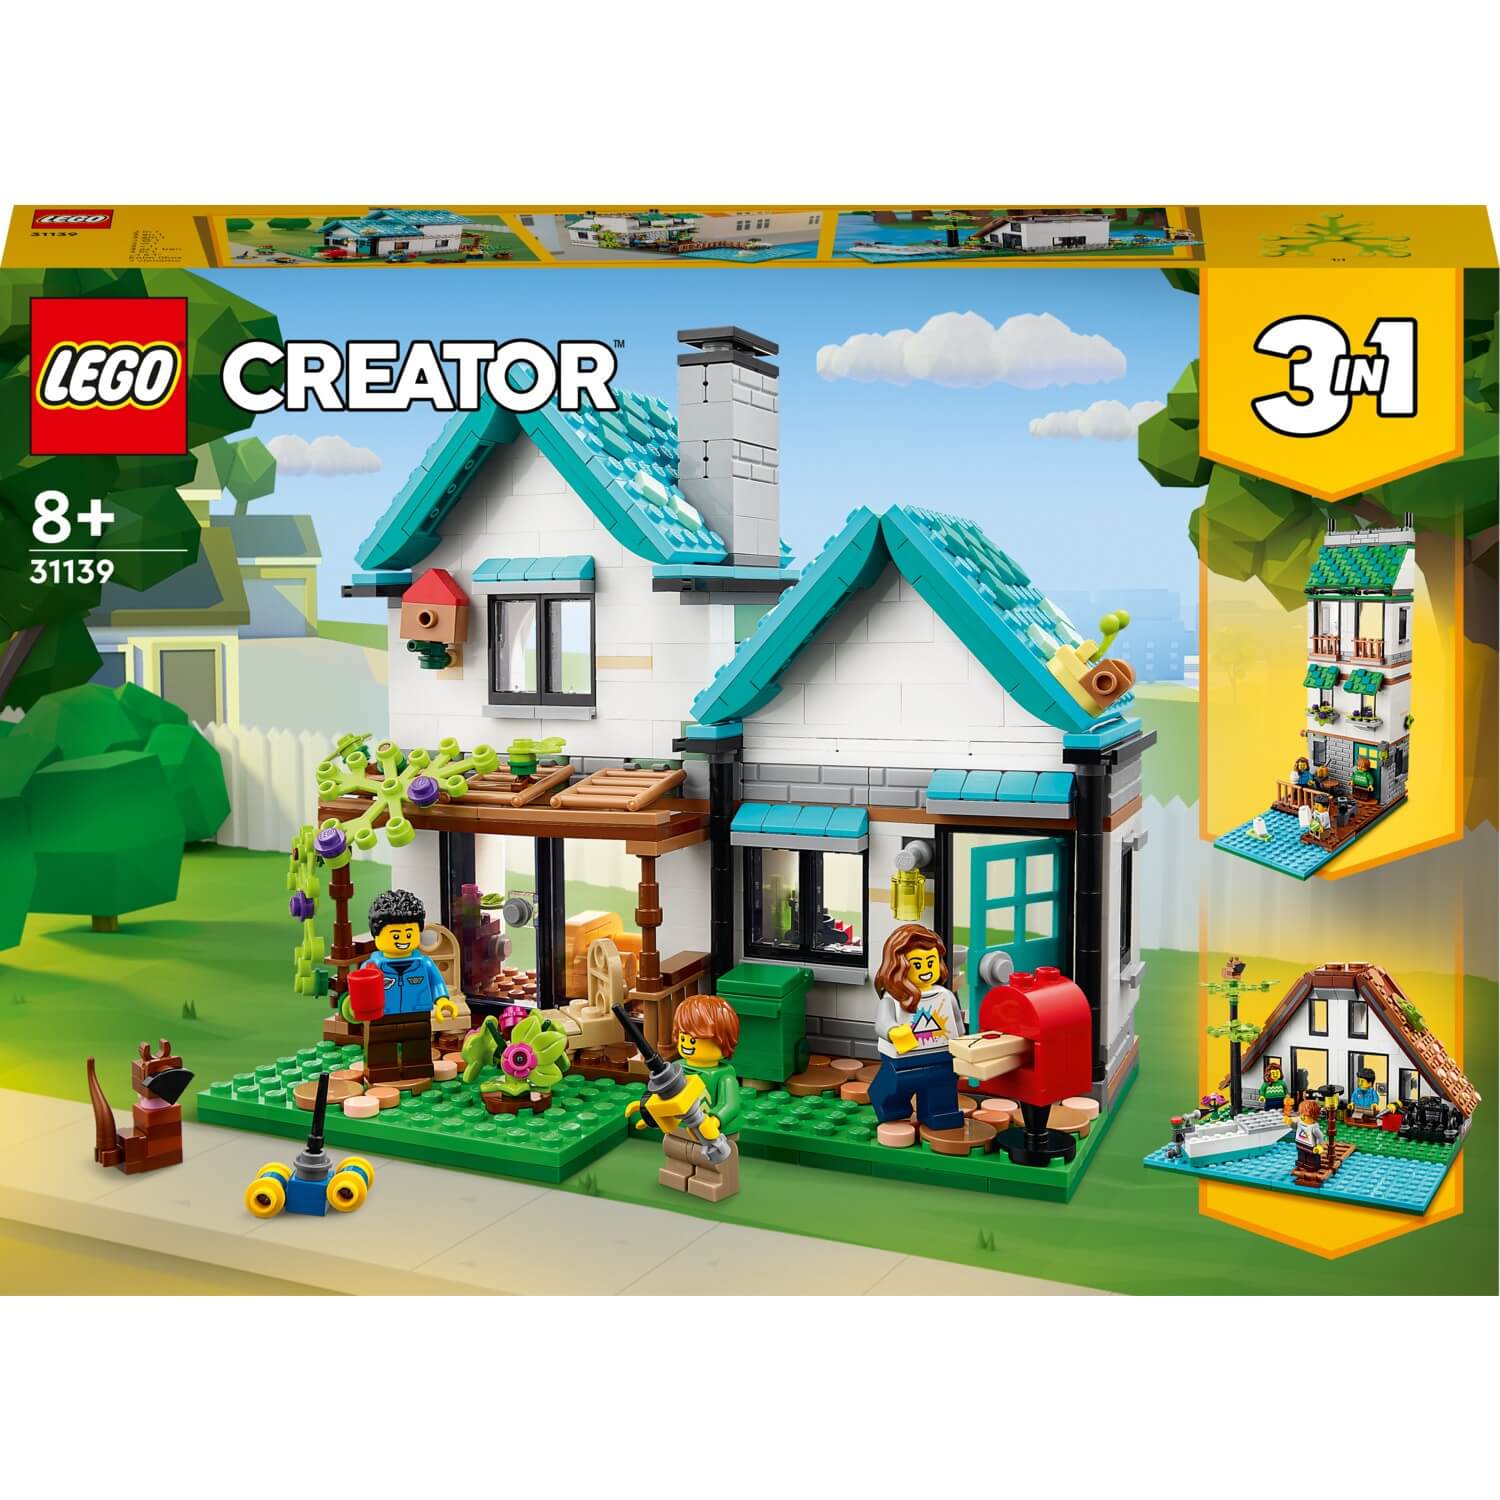 Конструктор LEGO Creator Уютный дом 31139, 808 деталей конструктор lego creator 31139 cozy house 808 дет